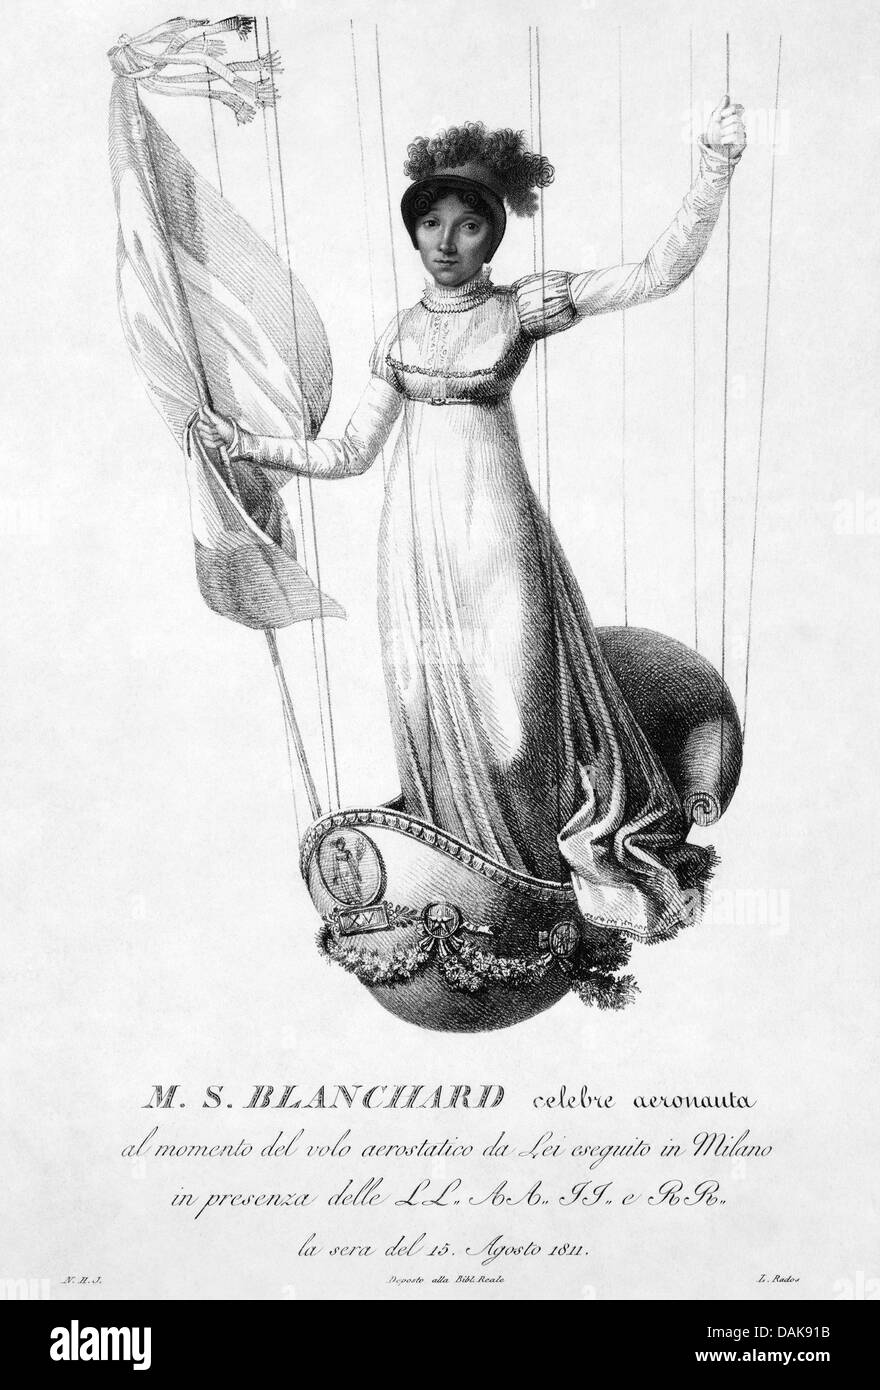 SOPHIE BLANCHARD (1778-1819), aéronaute français dans une gravure commémorant son ascension à Milan le 15 août 1811 - voir ci-dessous Banque D'Images